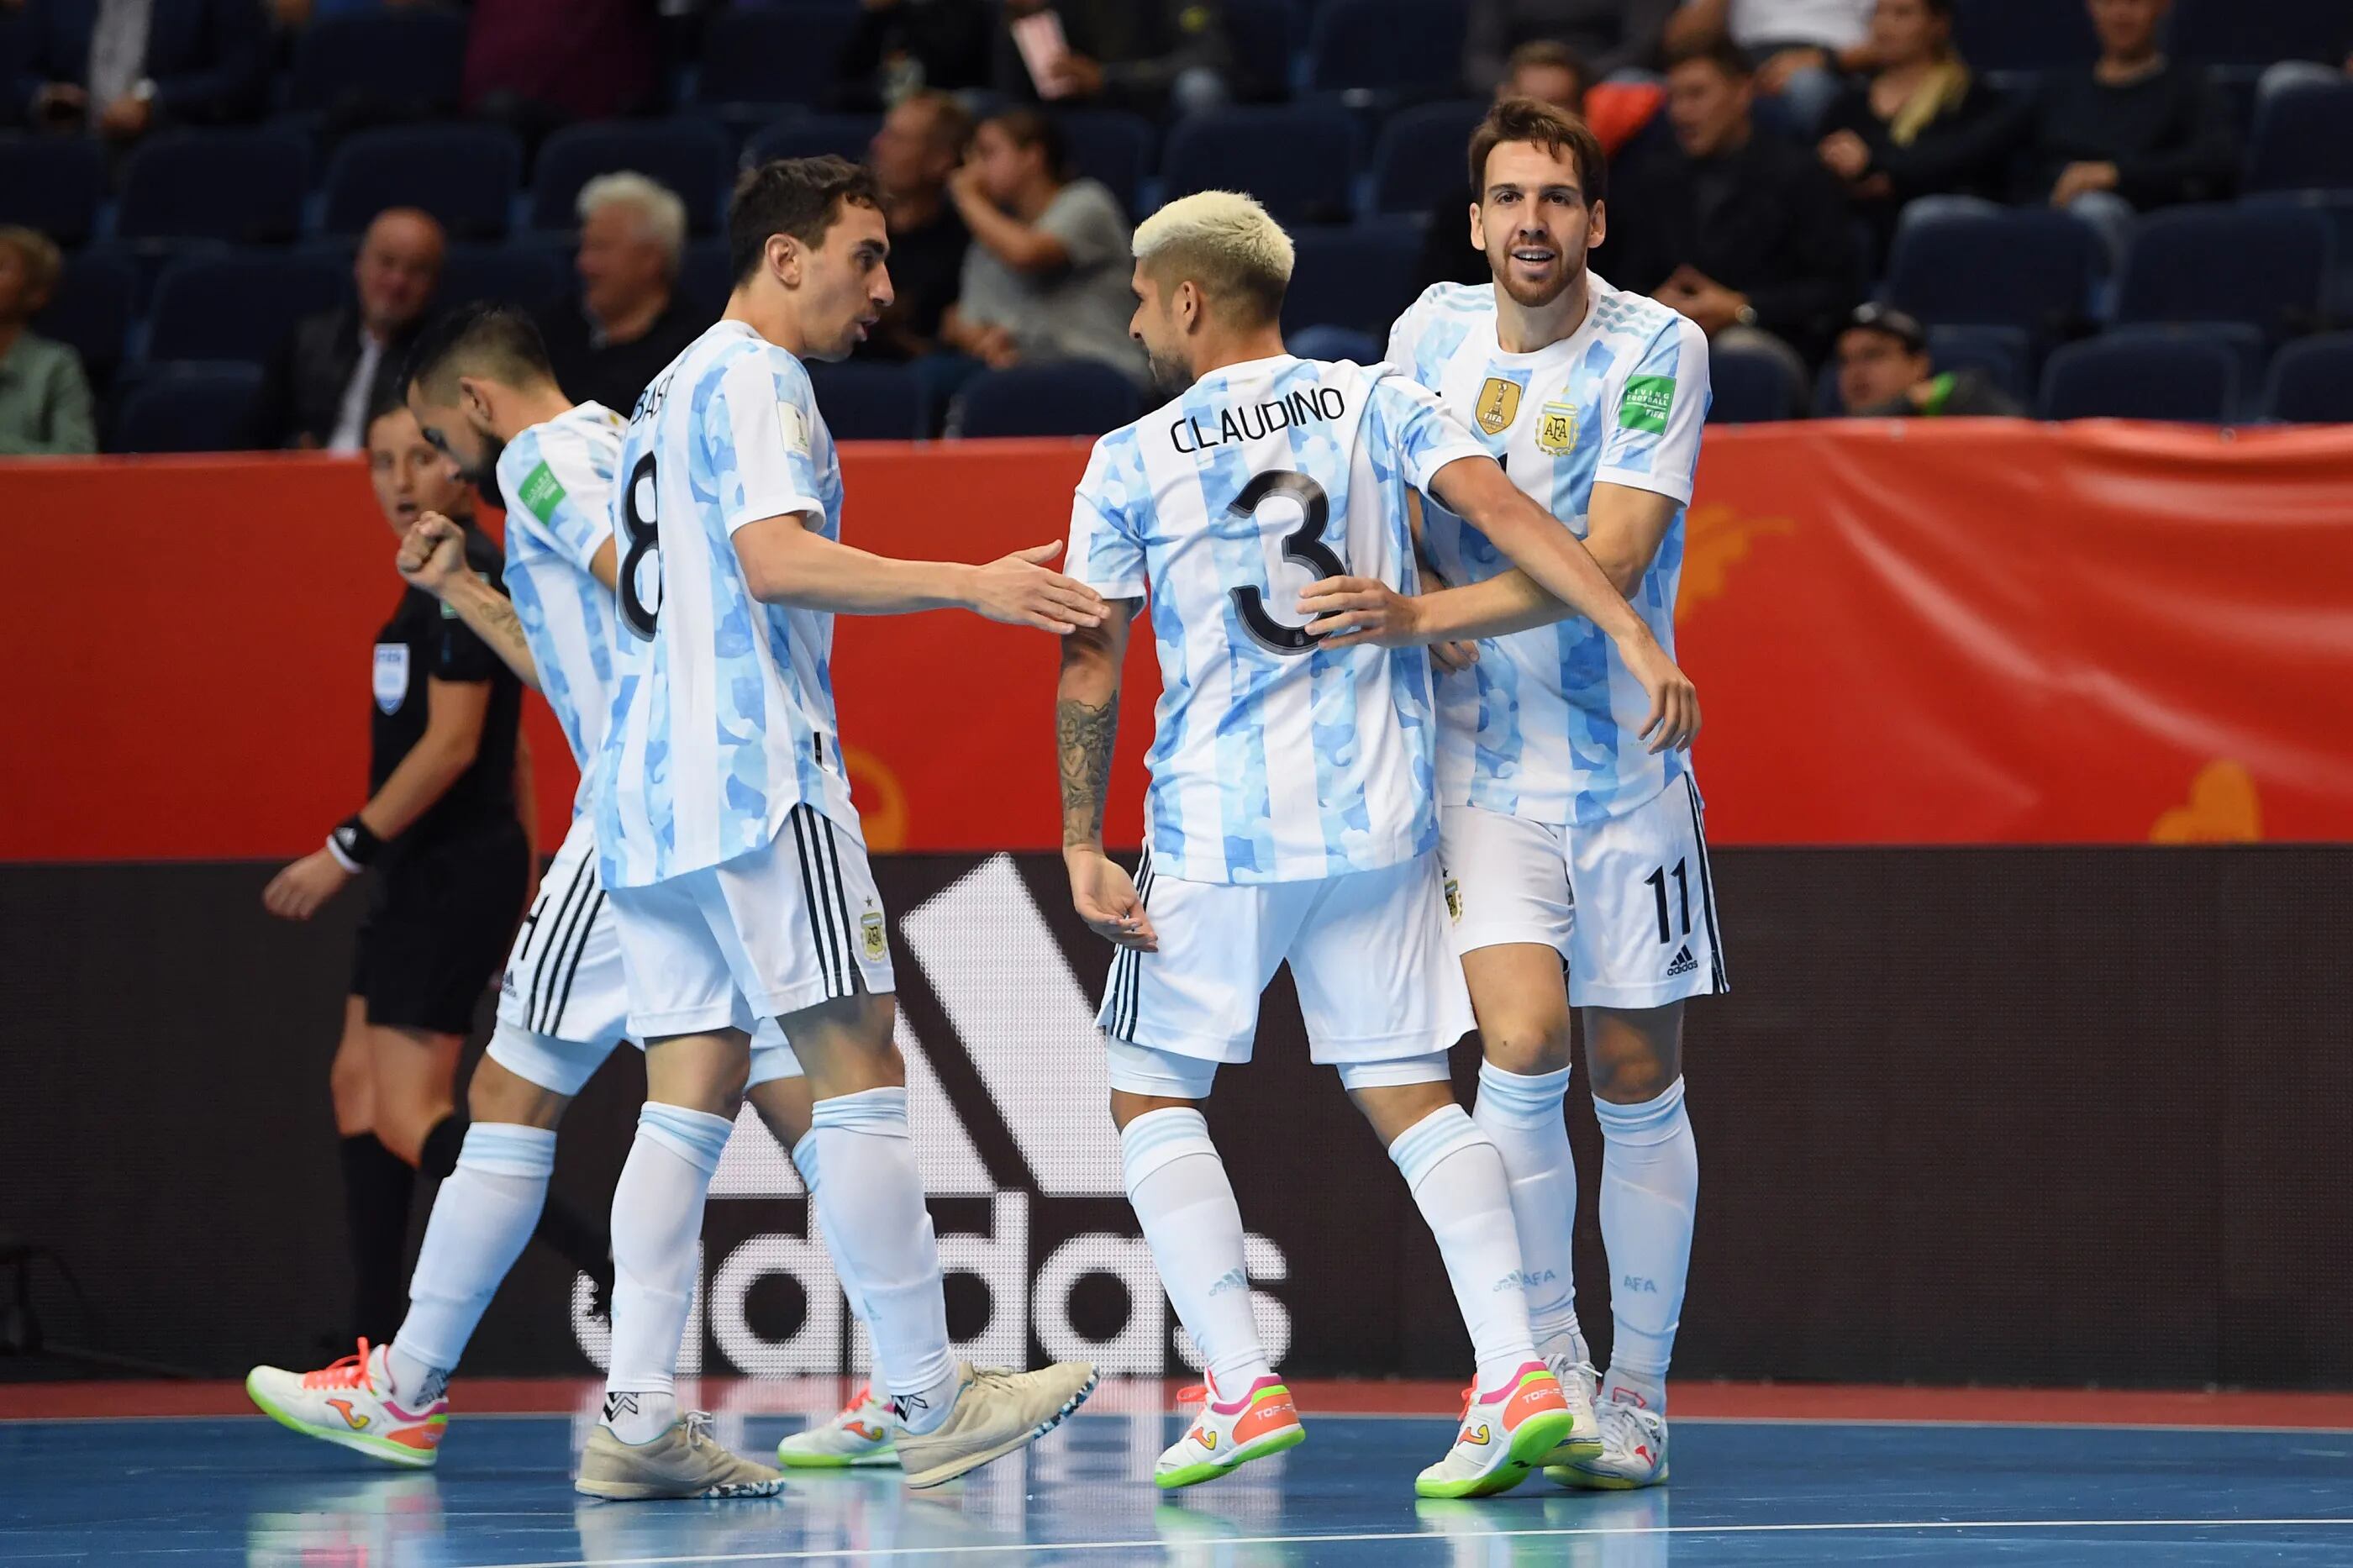 Apabullante victoria de Argentina en el Mundial de futsal: venció por 11 a 0 a Estados Unidos